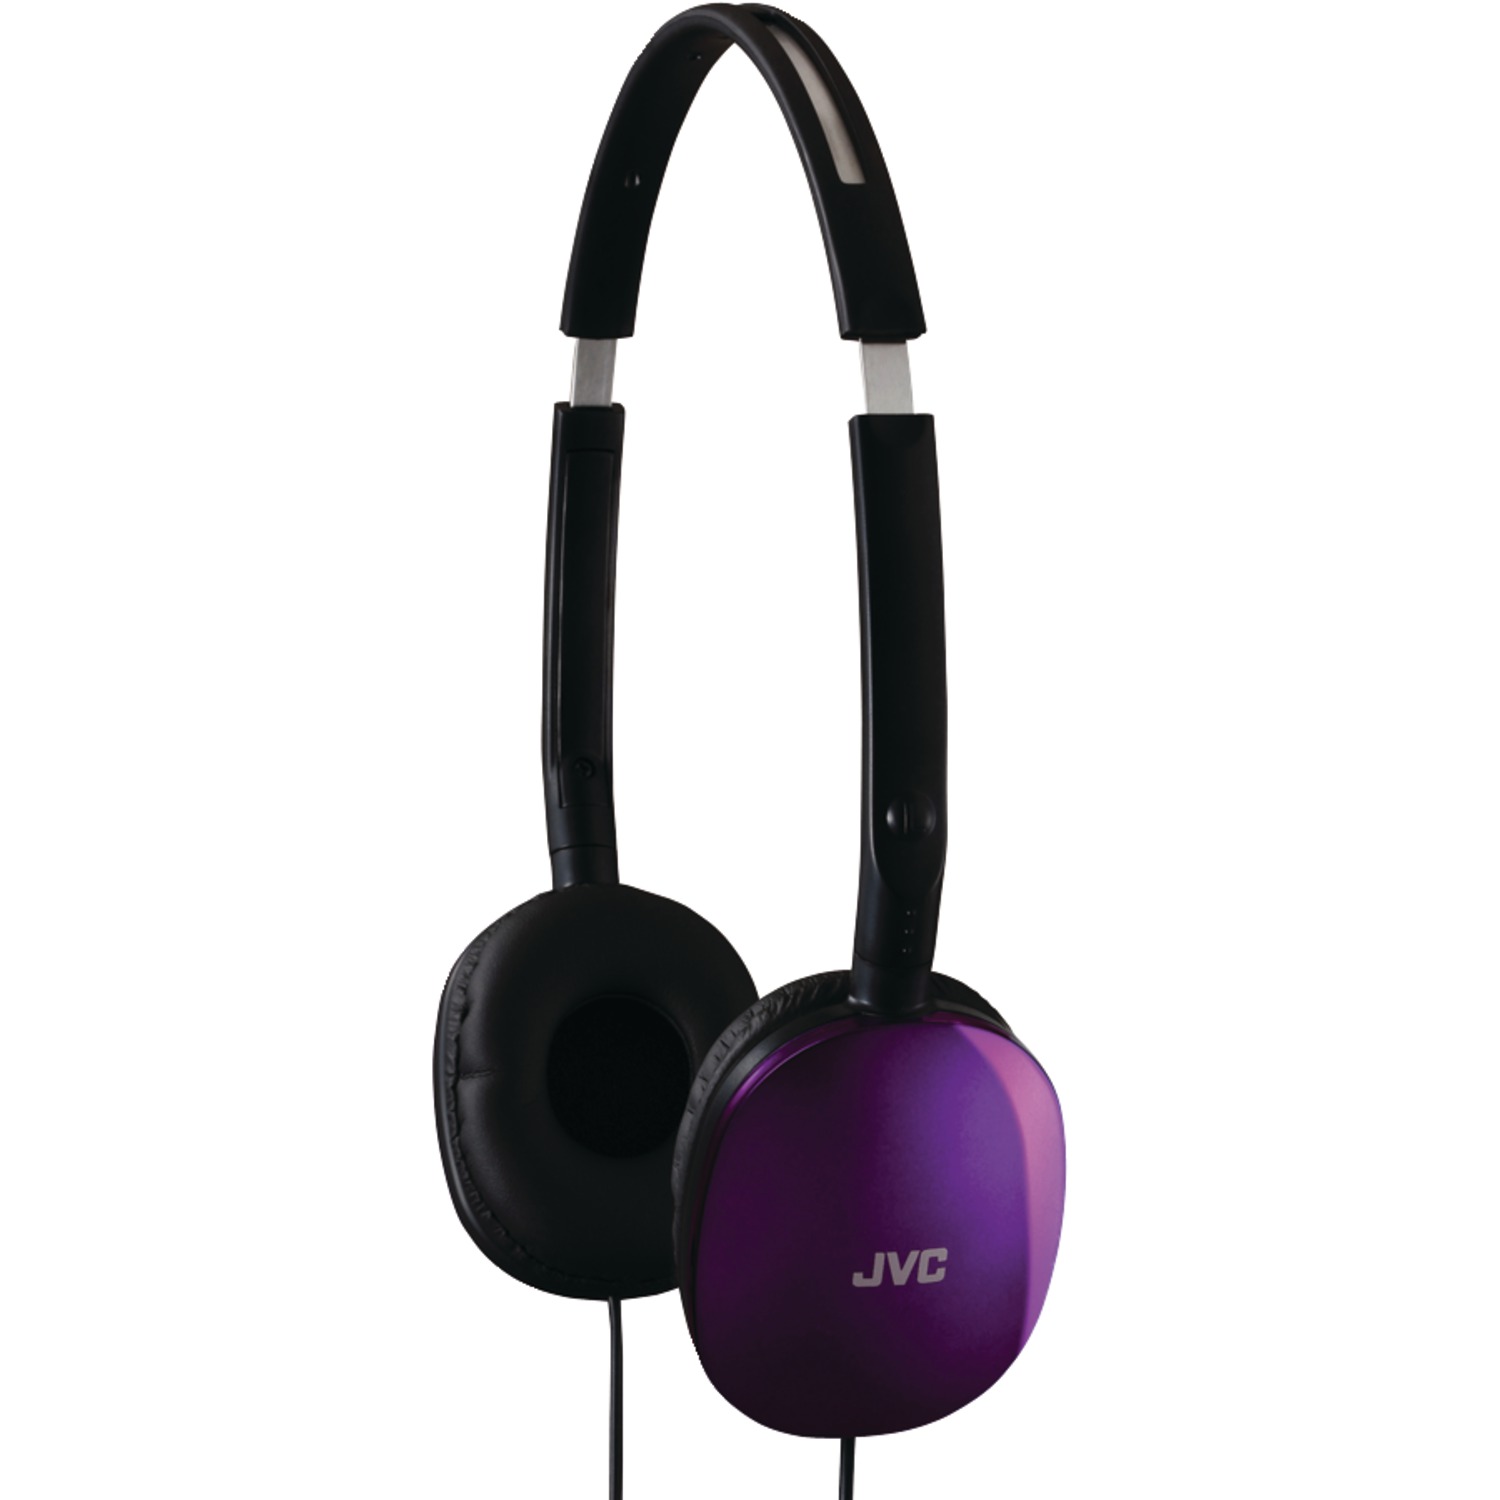 JVC HAS160V Flat Headphones (Violet) - image 1 of 2